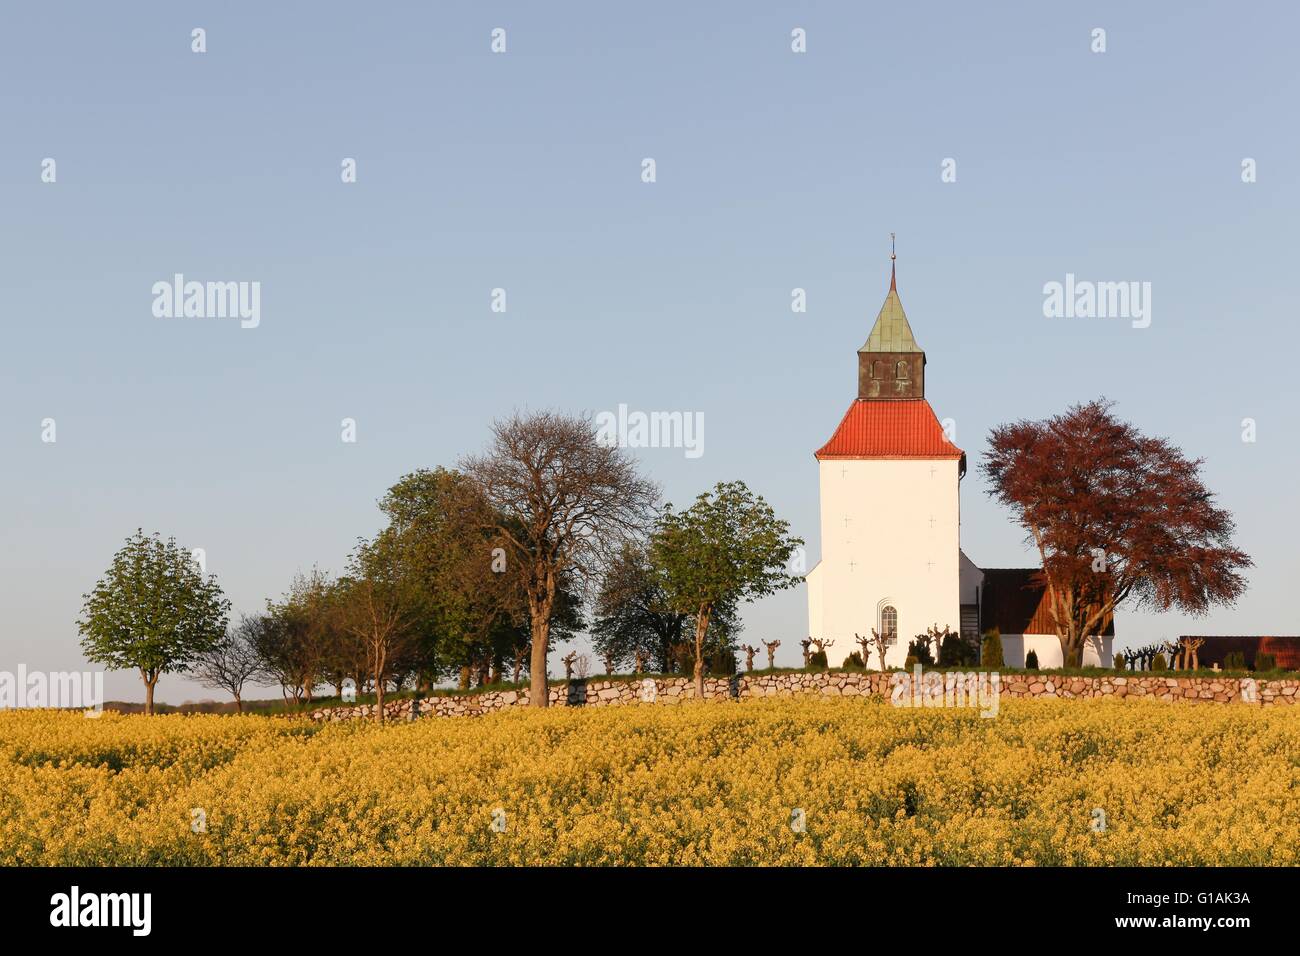 L'église danoise typique dans la campagne avec un champ de colza Banque D'Images